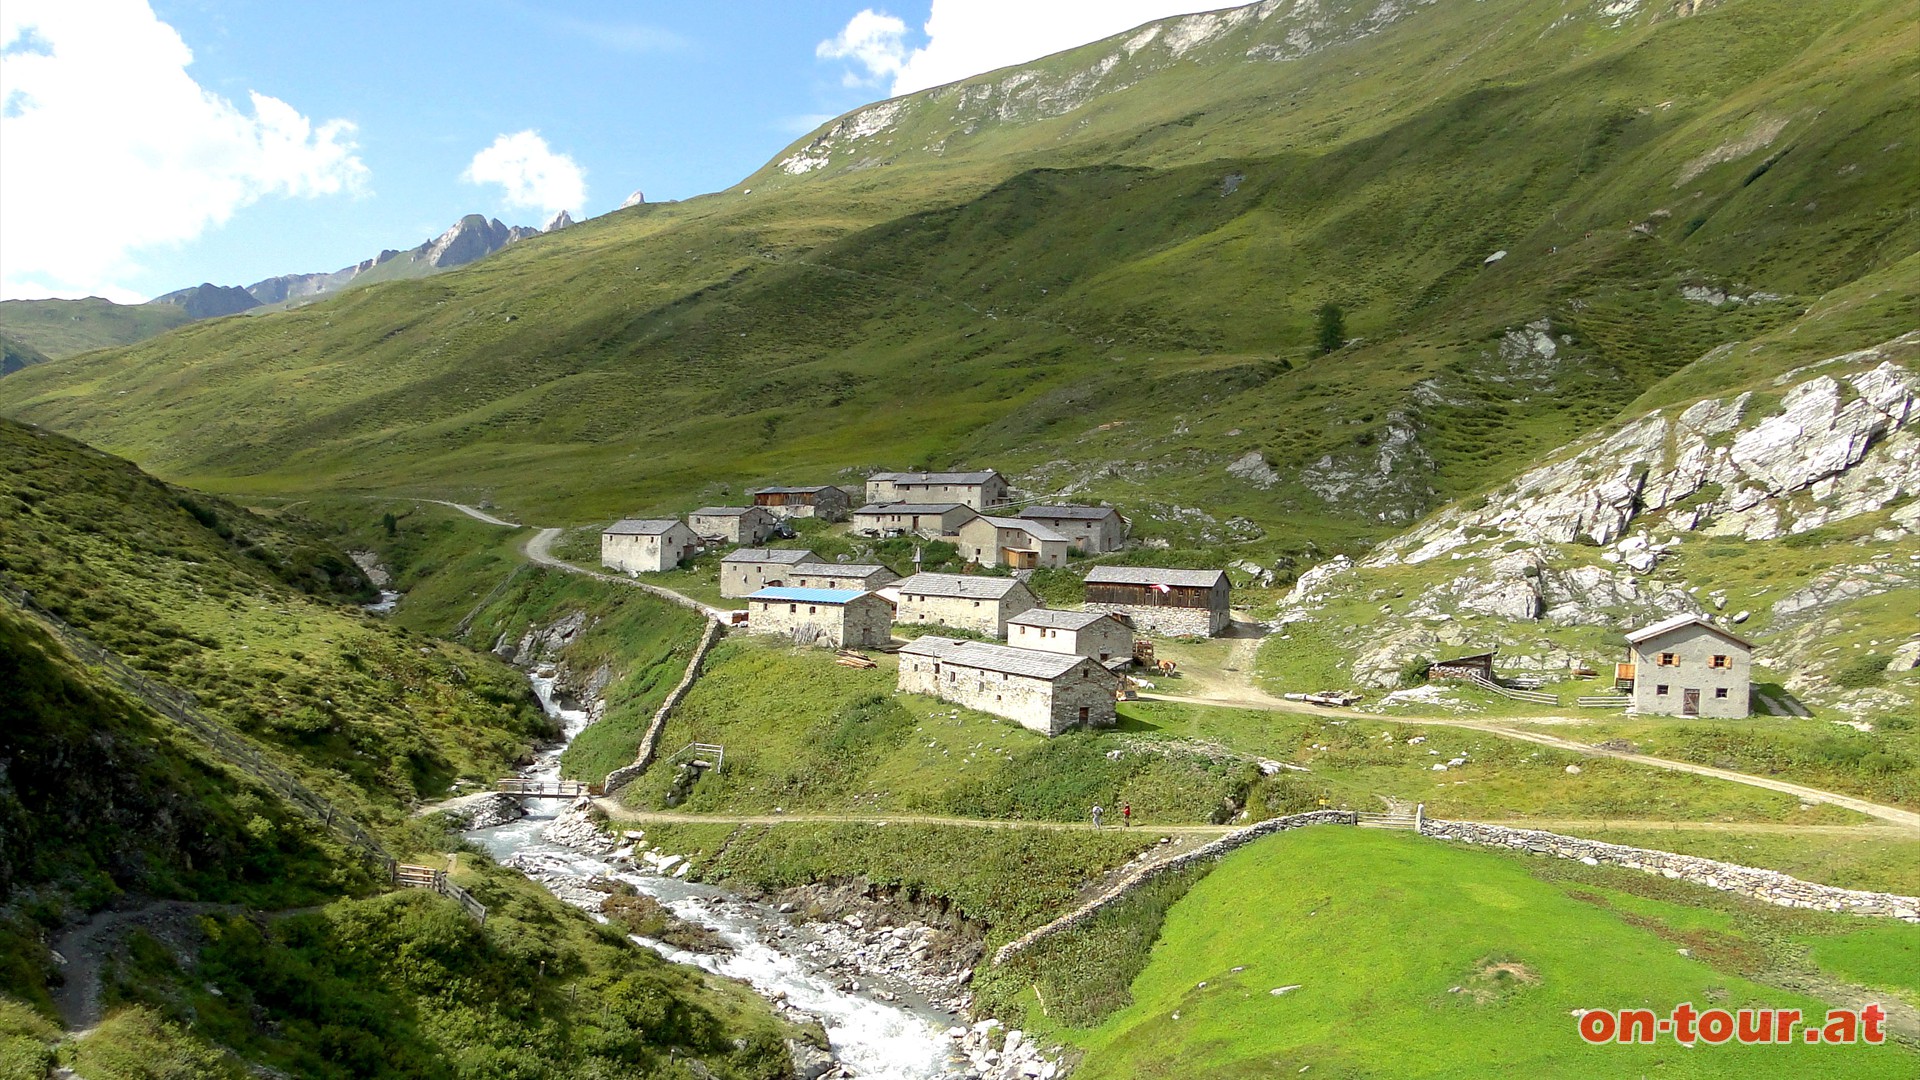 Einem Gebirgsdorf aus dem Himalaya gleich, wirkt die, unter Denkmalschutz gestellte, Jagdhausalm.